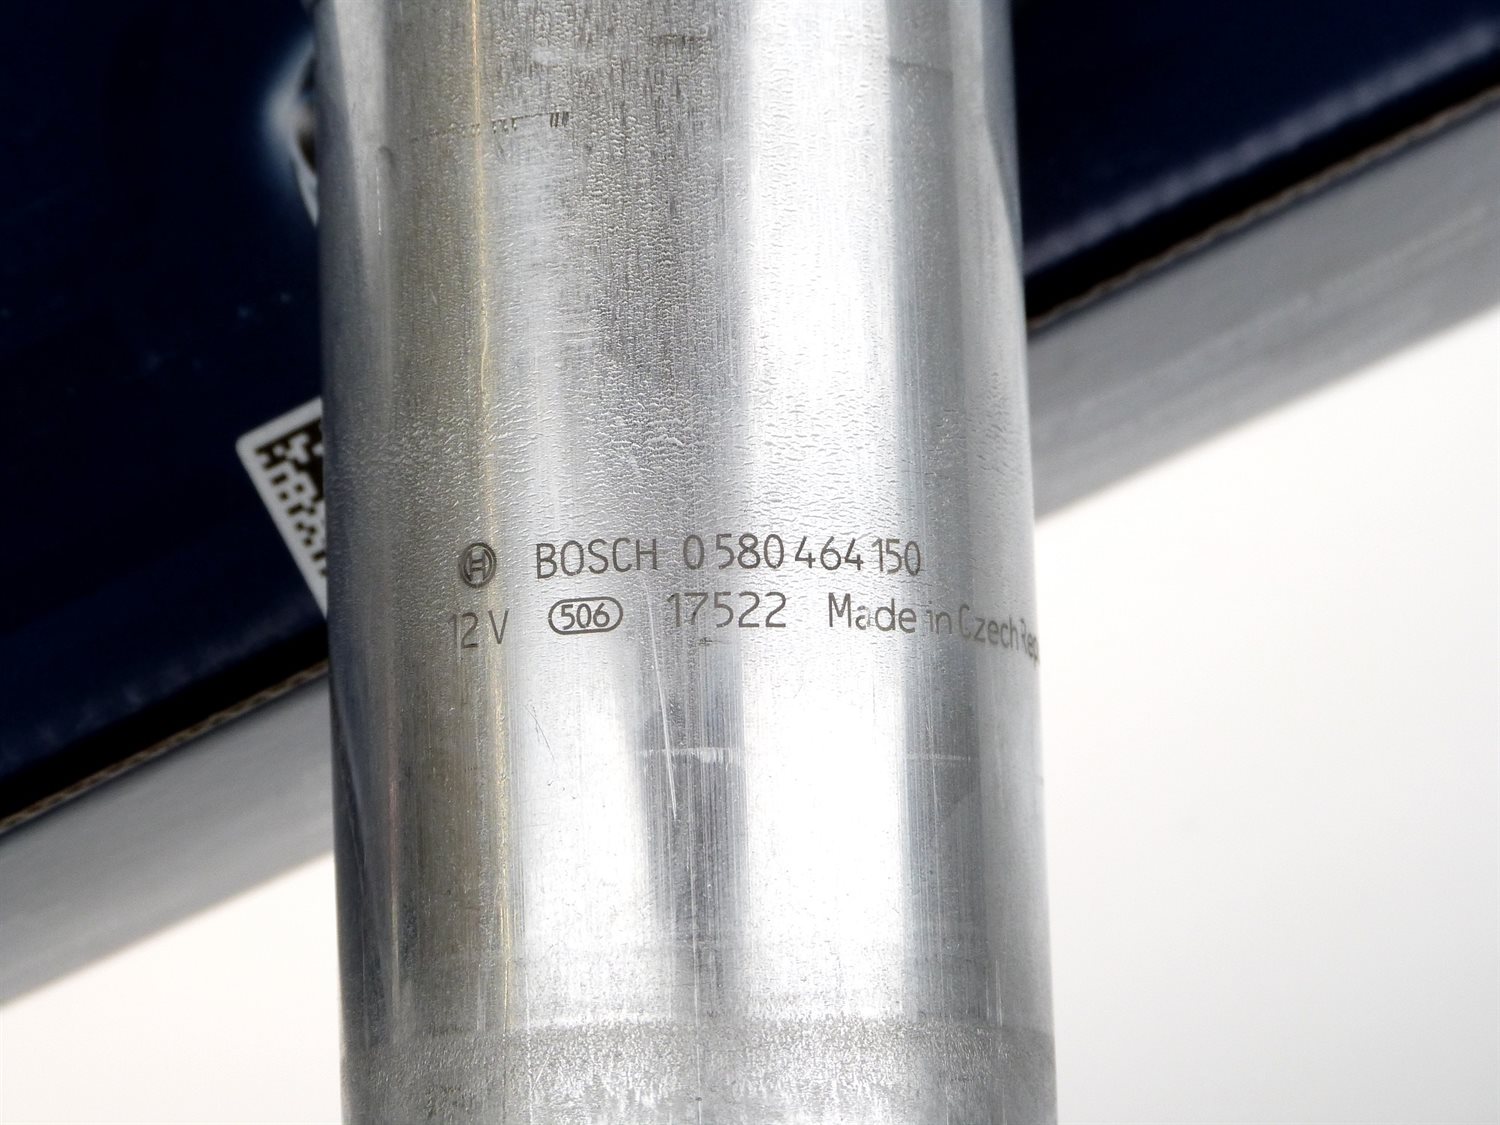 Bosch FP200 Kraftstoffpumpe 0 580 464 200 (NEU ERSETZT 044)